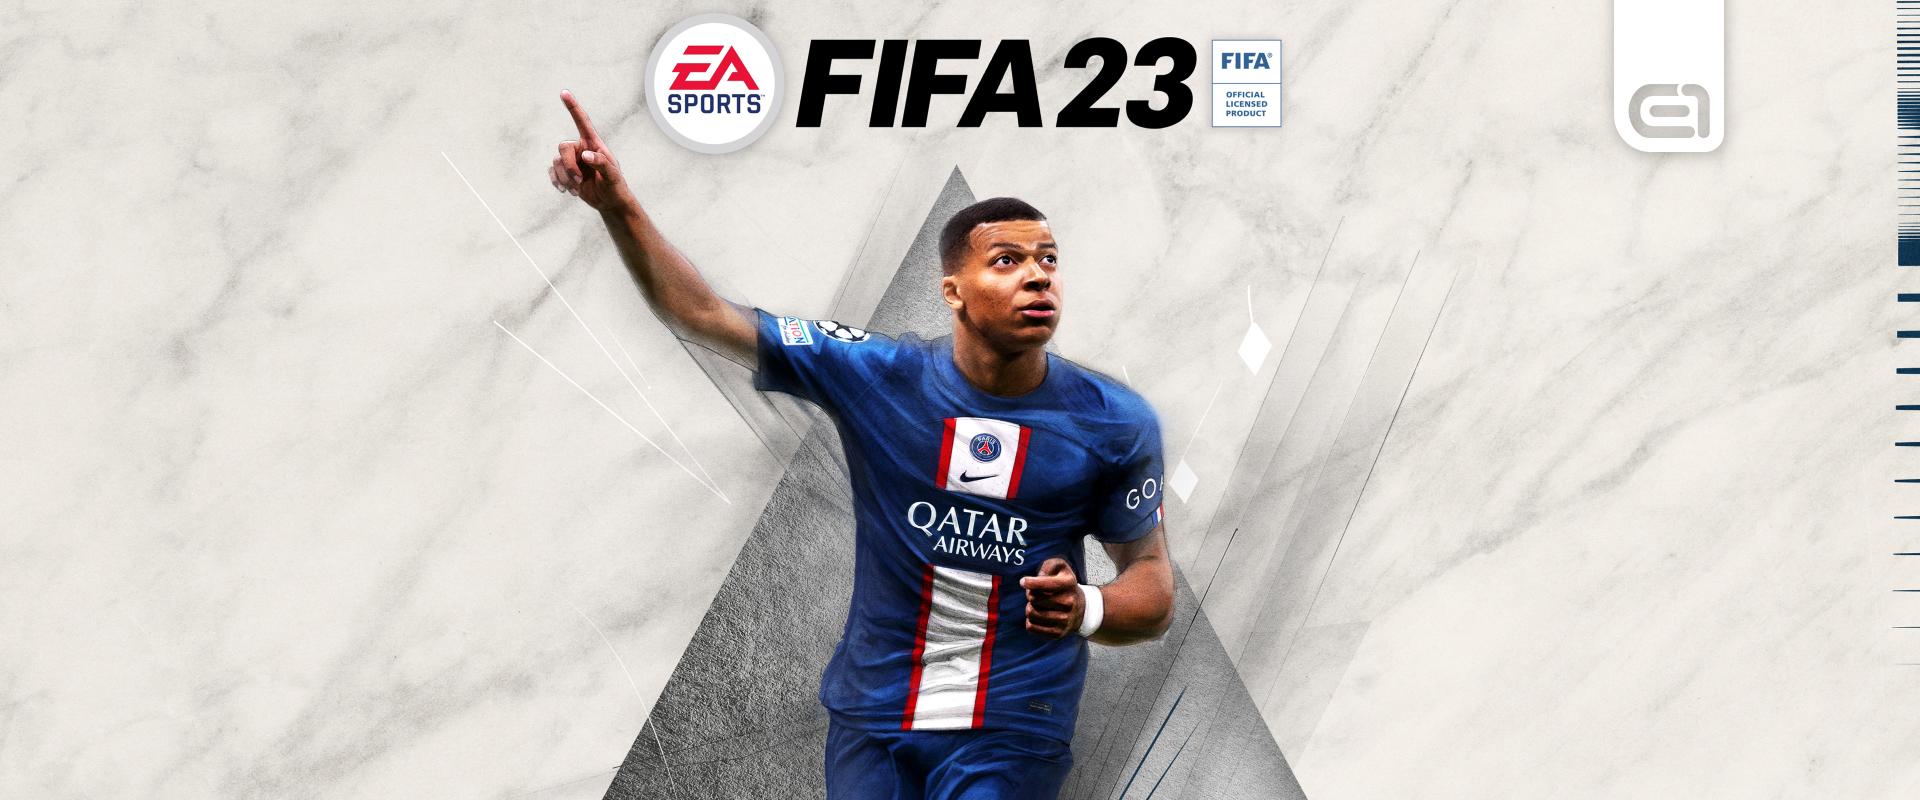 Jövő héttől potom pénzért játszhatsz a FIFA 23-mal!